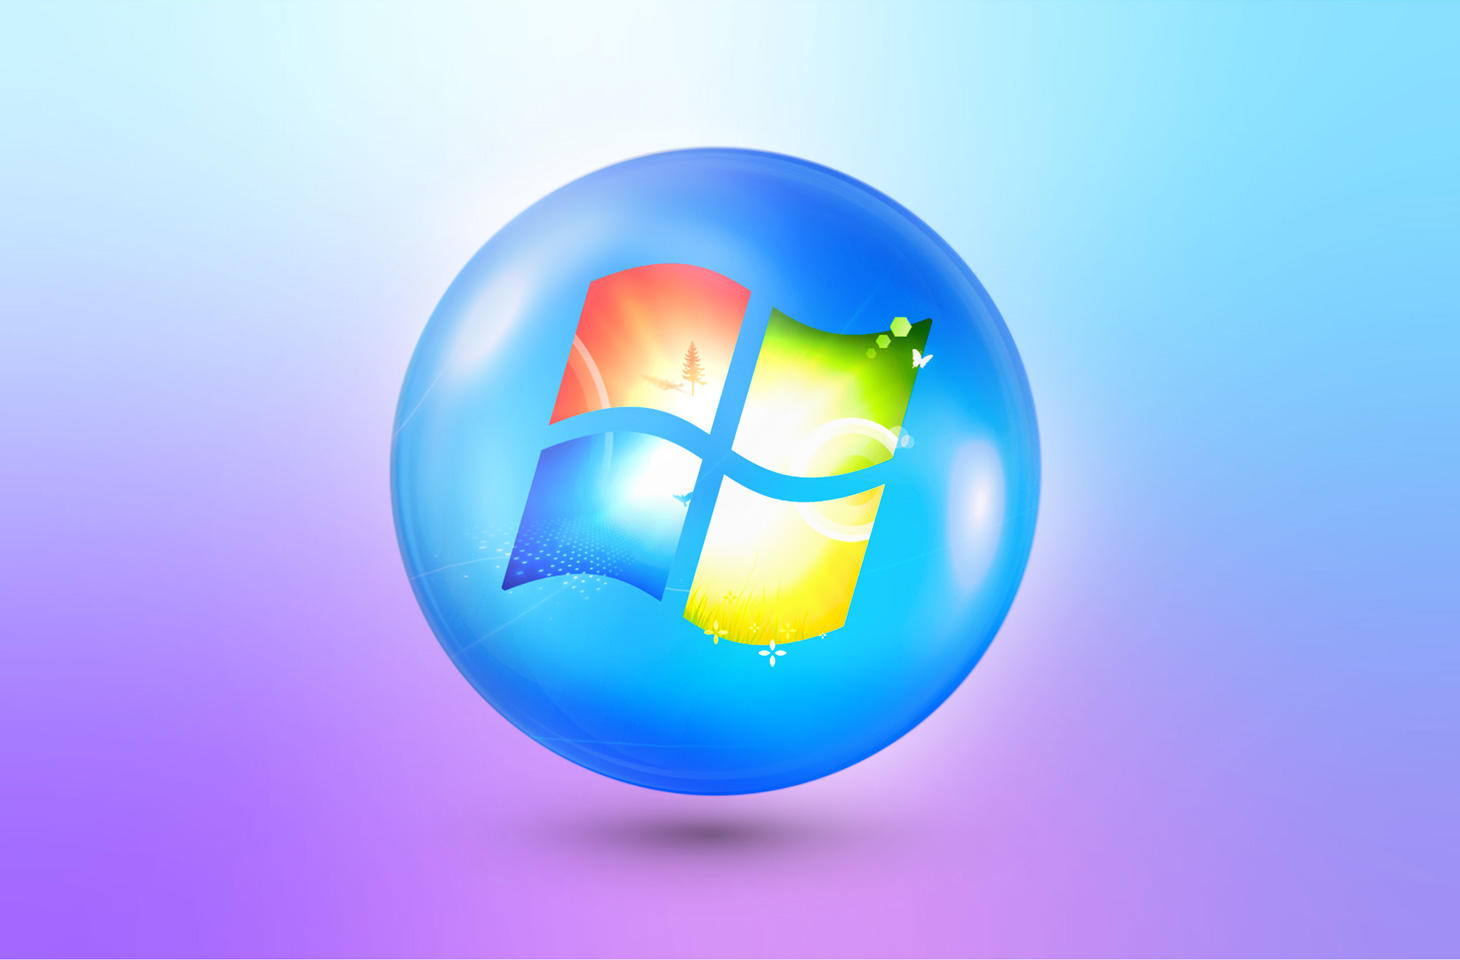 Bảo vệ máy tính Windows 7 của bạn là điều cần thiết. Sử dụng phần mềm diệt virus để ngăn chặn các mối đe dọa và đảm bảo an toàn cho dữ liệu cá nhân của bạn. Hãy xem hình ảnh để tìm kiếm phần mềm diệt virus chất lượng cao và đáng tin cậy.